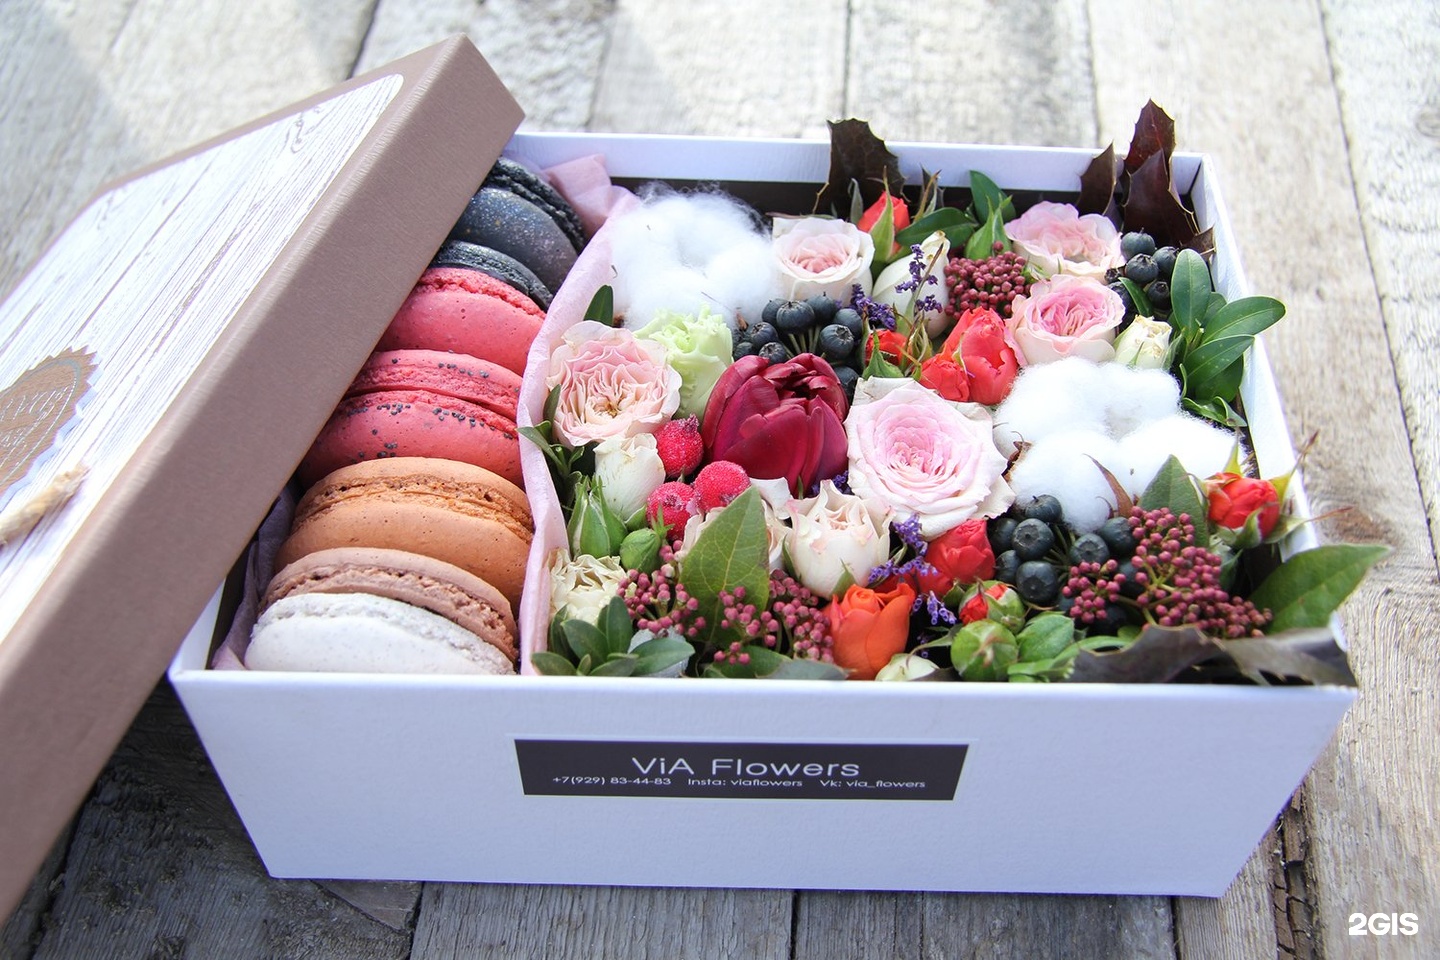 Цветы с конфетами в коробке